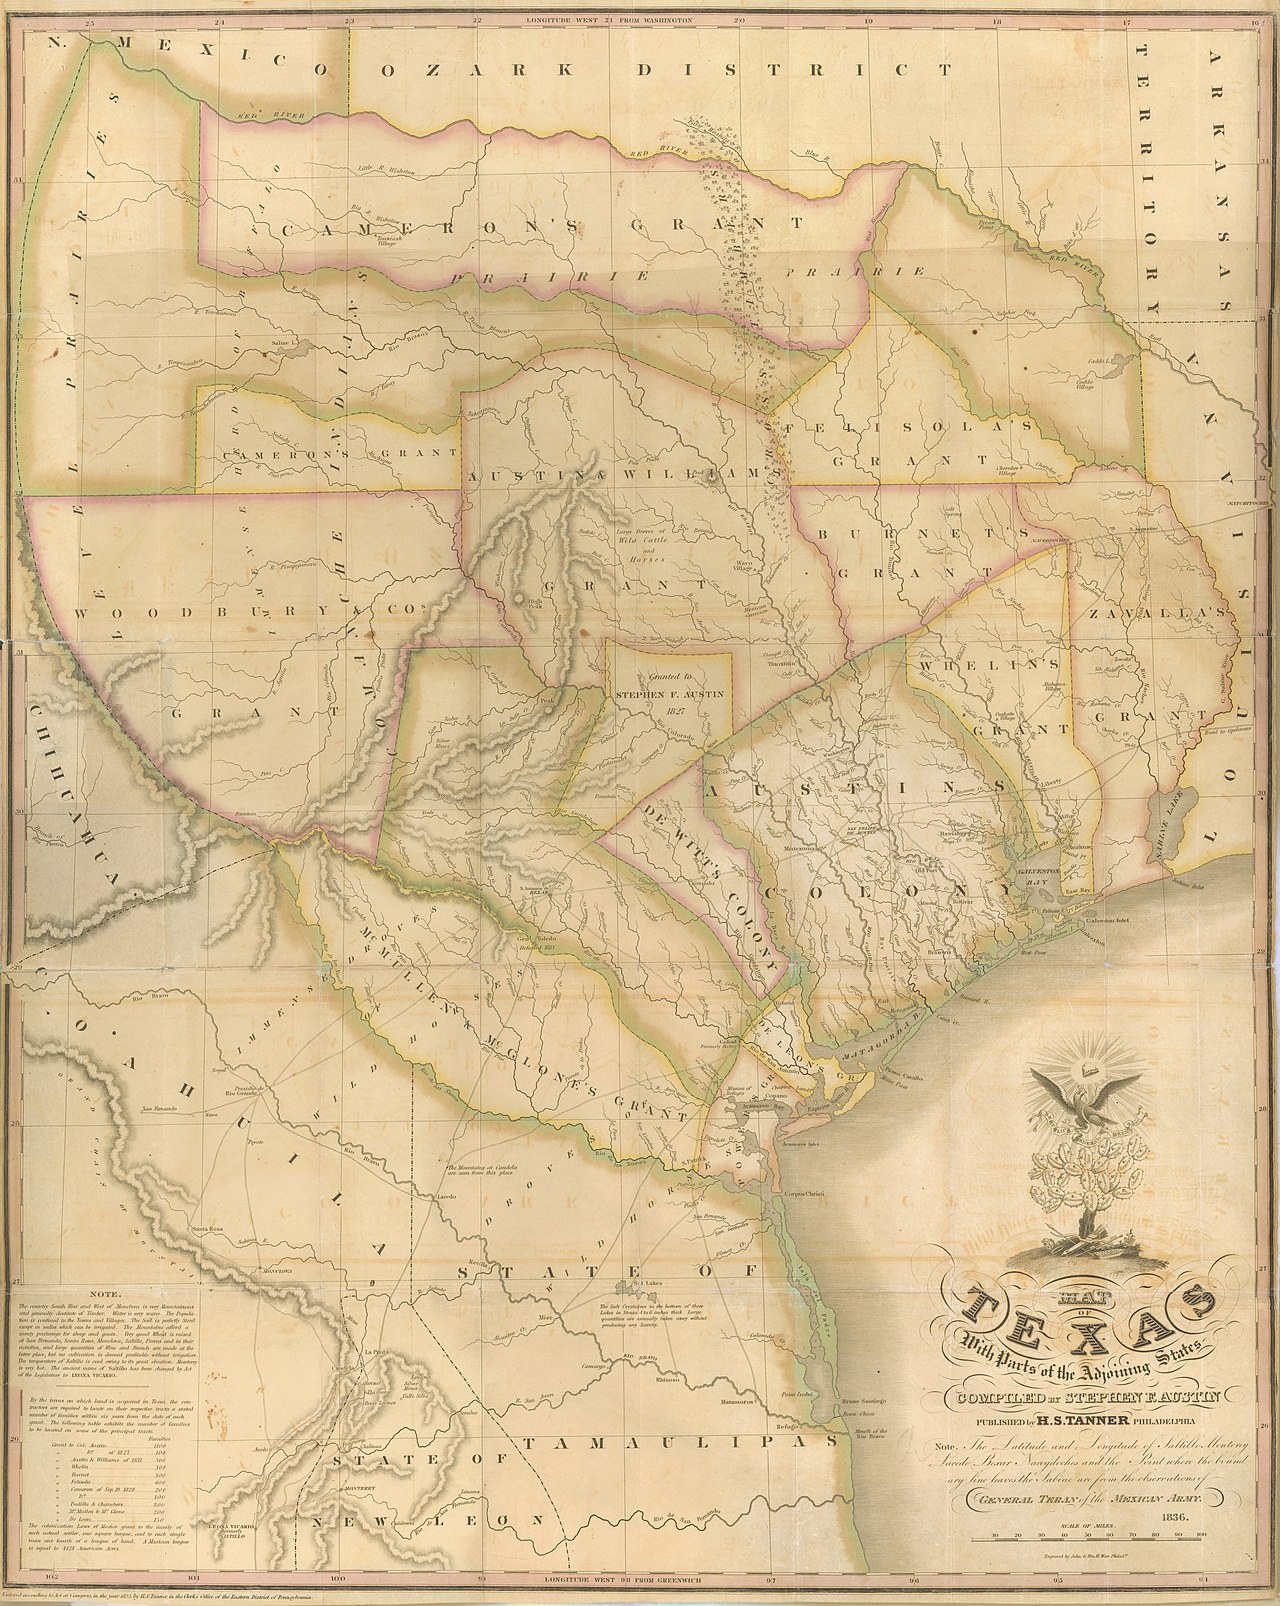 Mapa del territorio de Texas realizado por Stephen F. Austin en 1836.